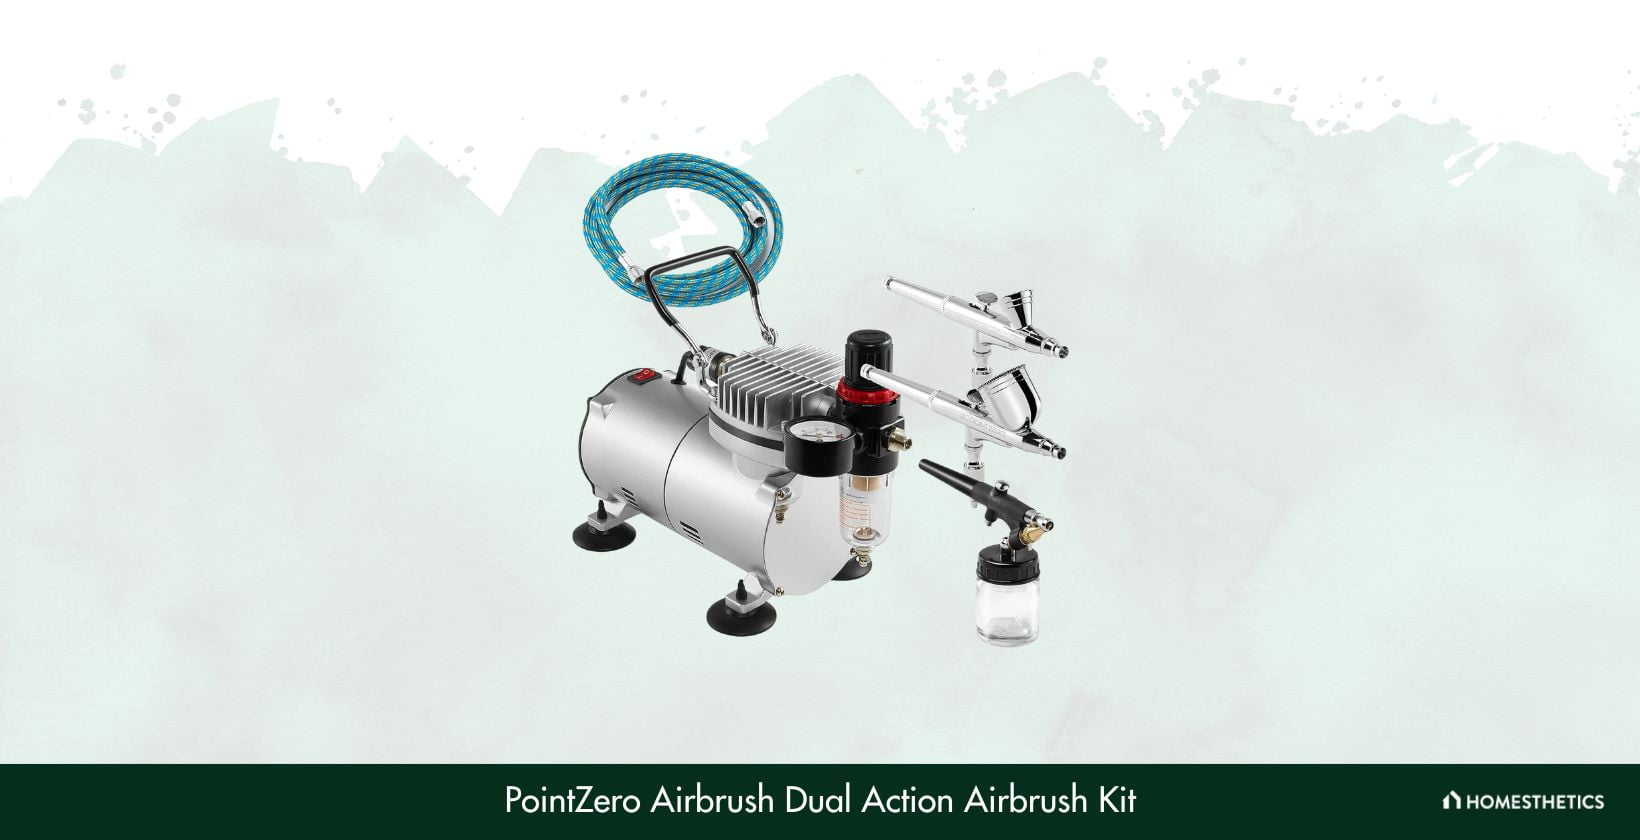 PointZero Airbrush Dual Action Airbrush Kit